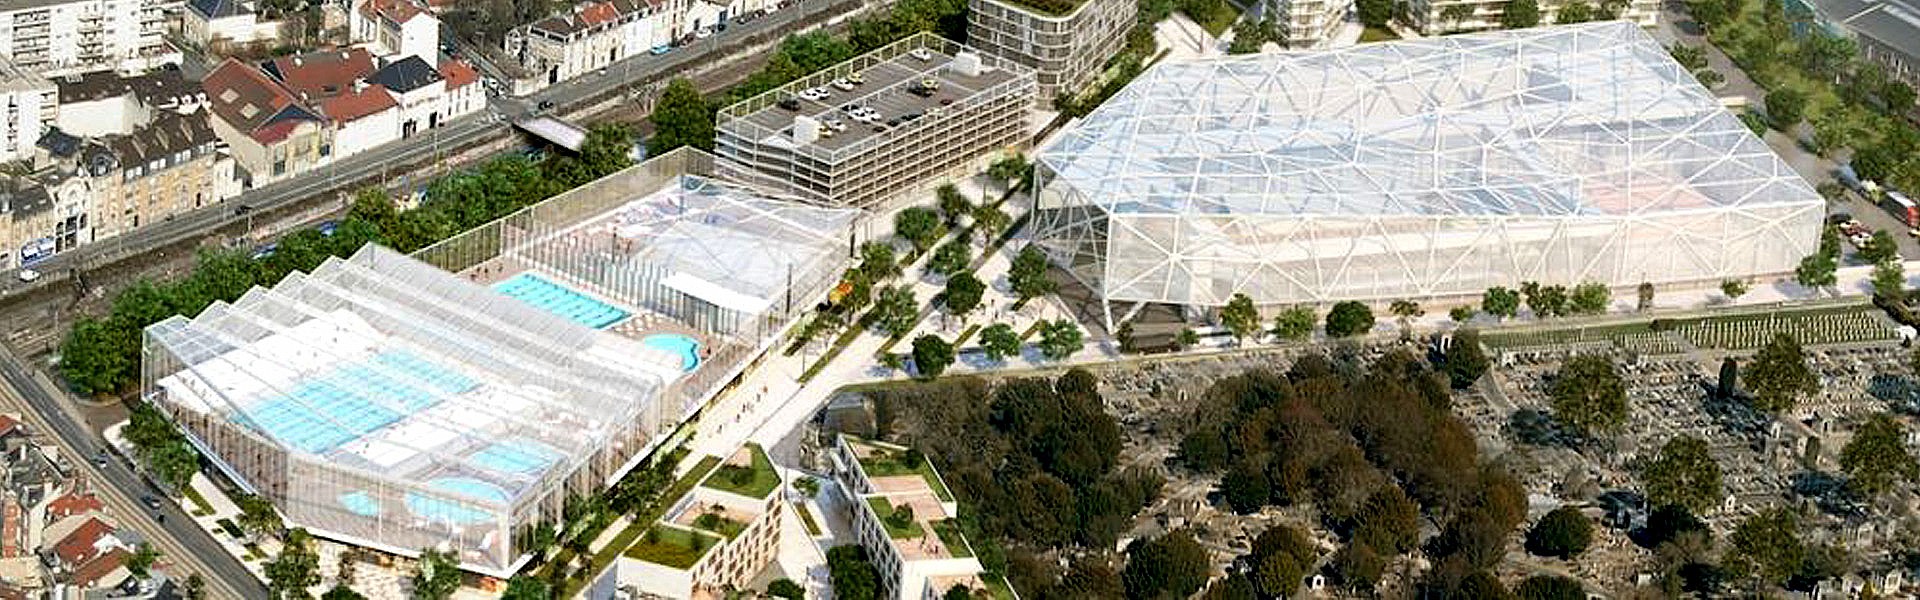 Reims : un accord trouvé pour sauver le projet aqualudique sur le site du Sernam - immobilier neuf à Reims